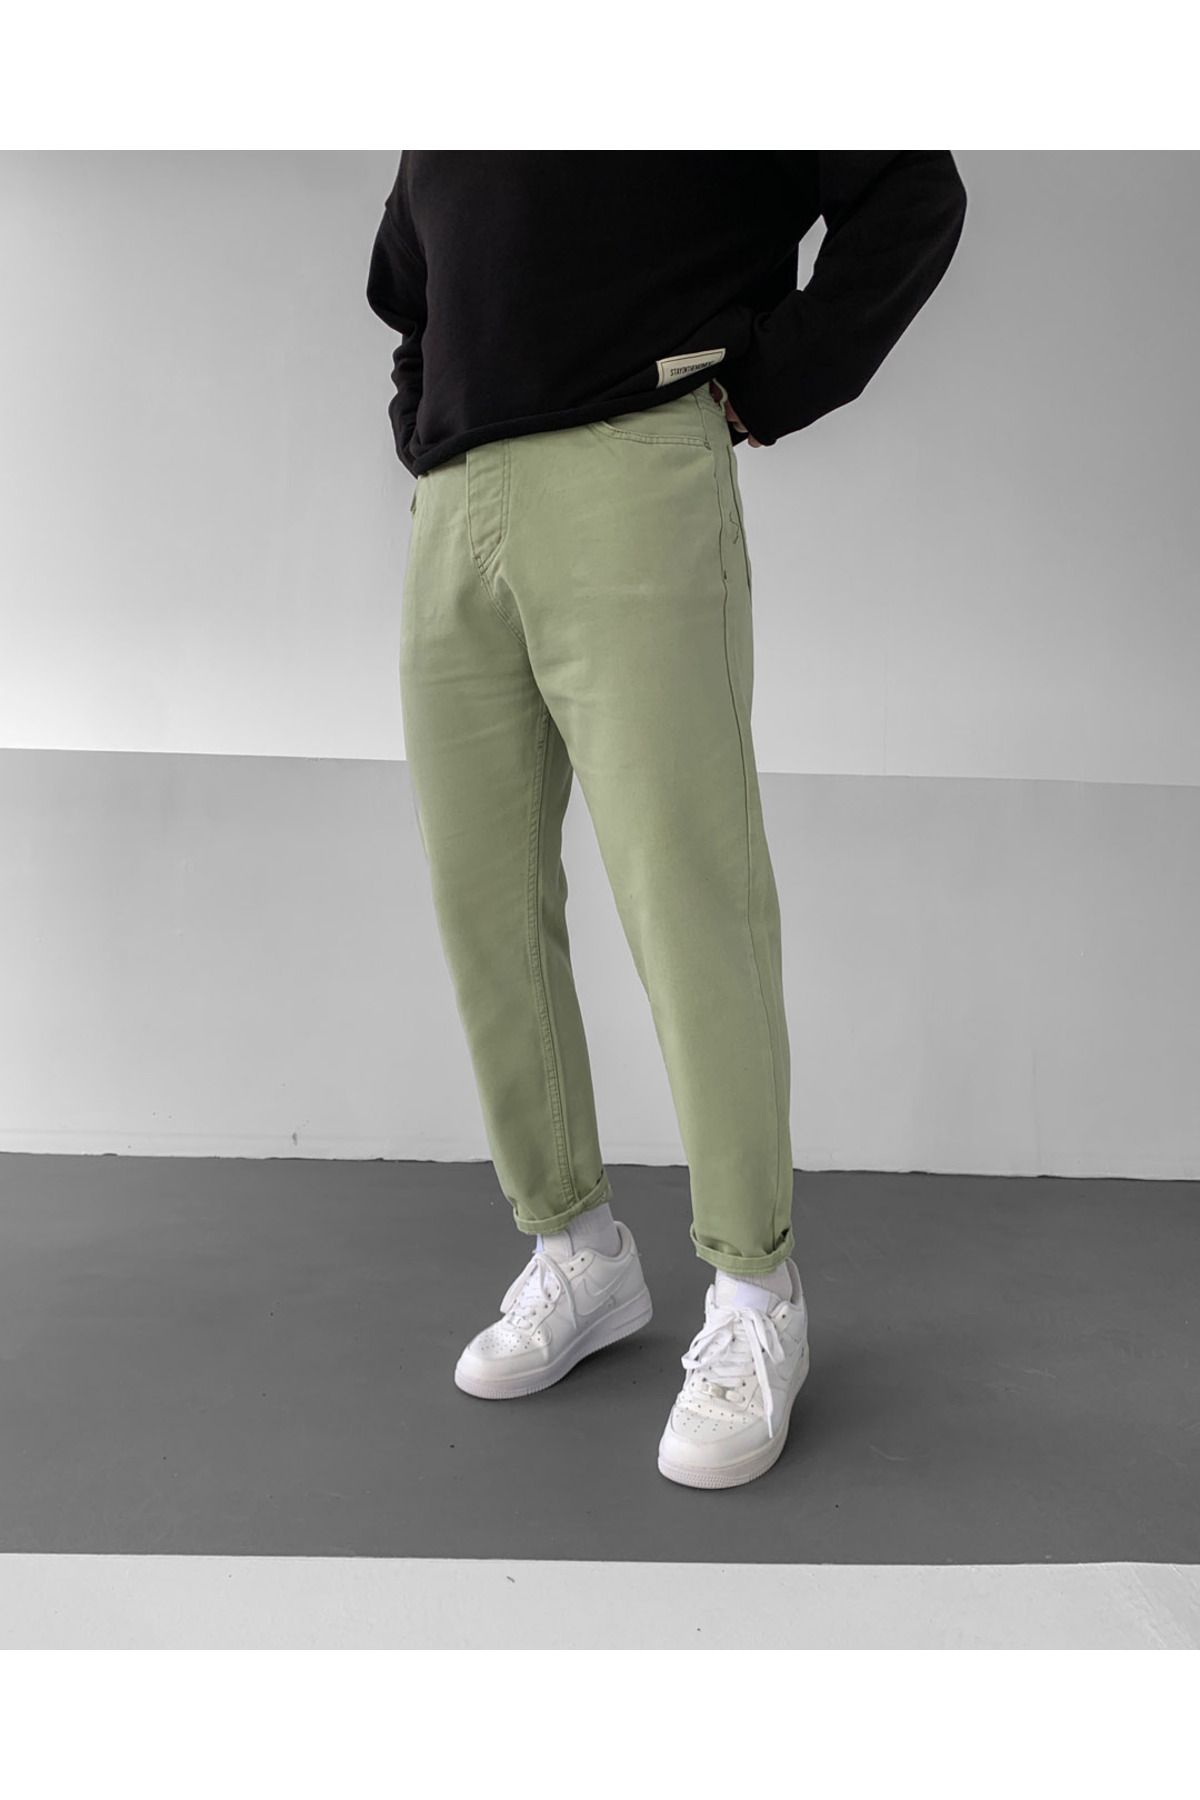 NO1 KONSEPT Yeşil Basic Boyfriend Pantolon